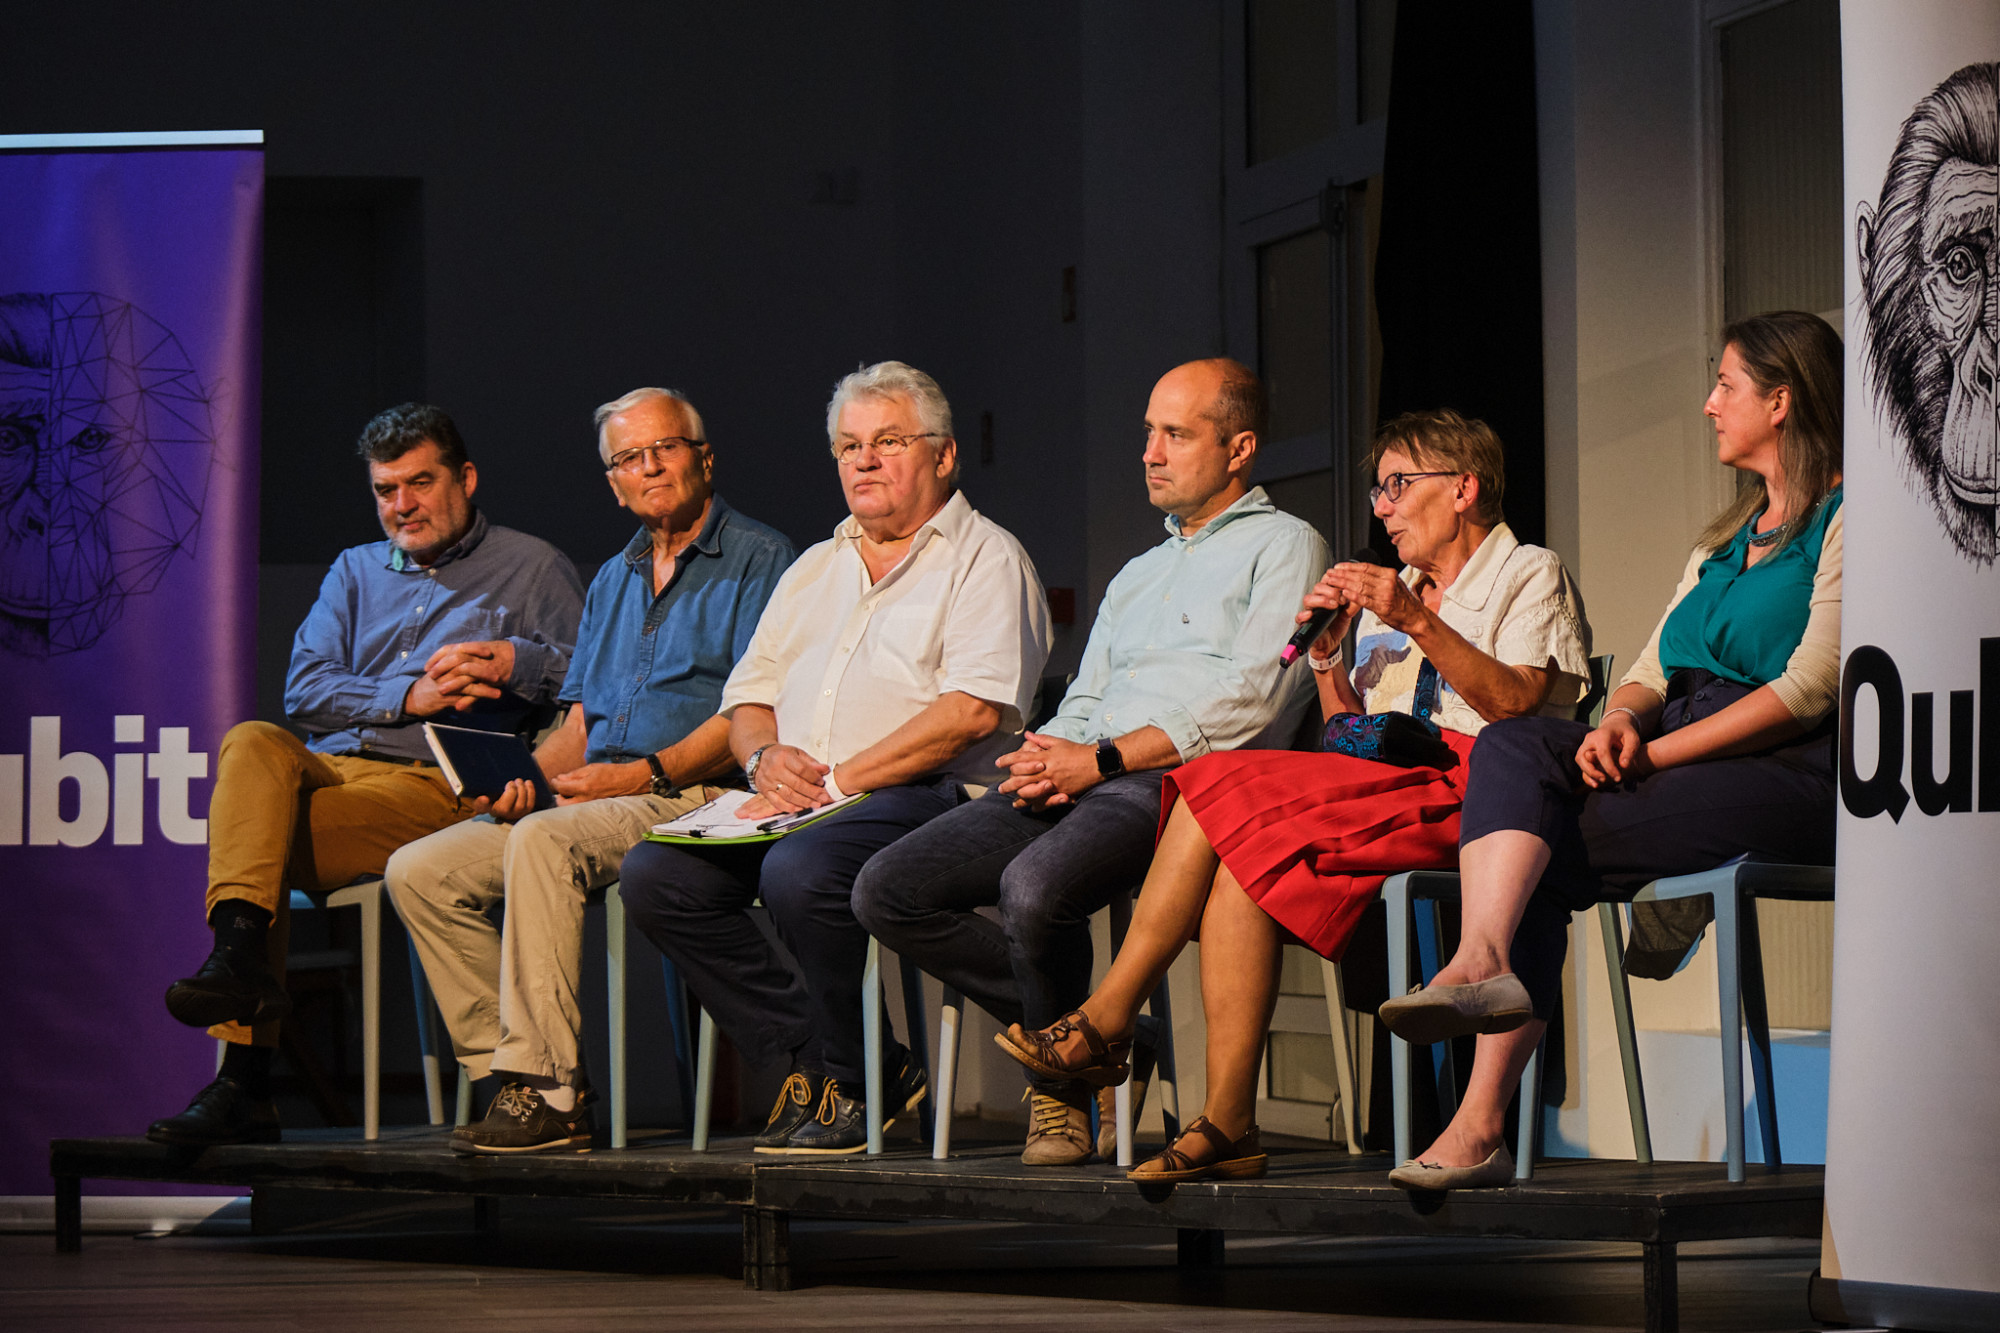 A 2022. szeptember 5-én rendezett Qubit.live#5 előadói: balról jobbra Oláh Miklós szociológus, Jásdi István borász, Szöllősi-Nagy András mérnök, hidrológus, Honti Márk építőmérnök, hidrológus, Istvánovics Vera ökológus, hidrobiológus, Kelemen Eszter ökológiai közgazdász